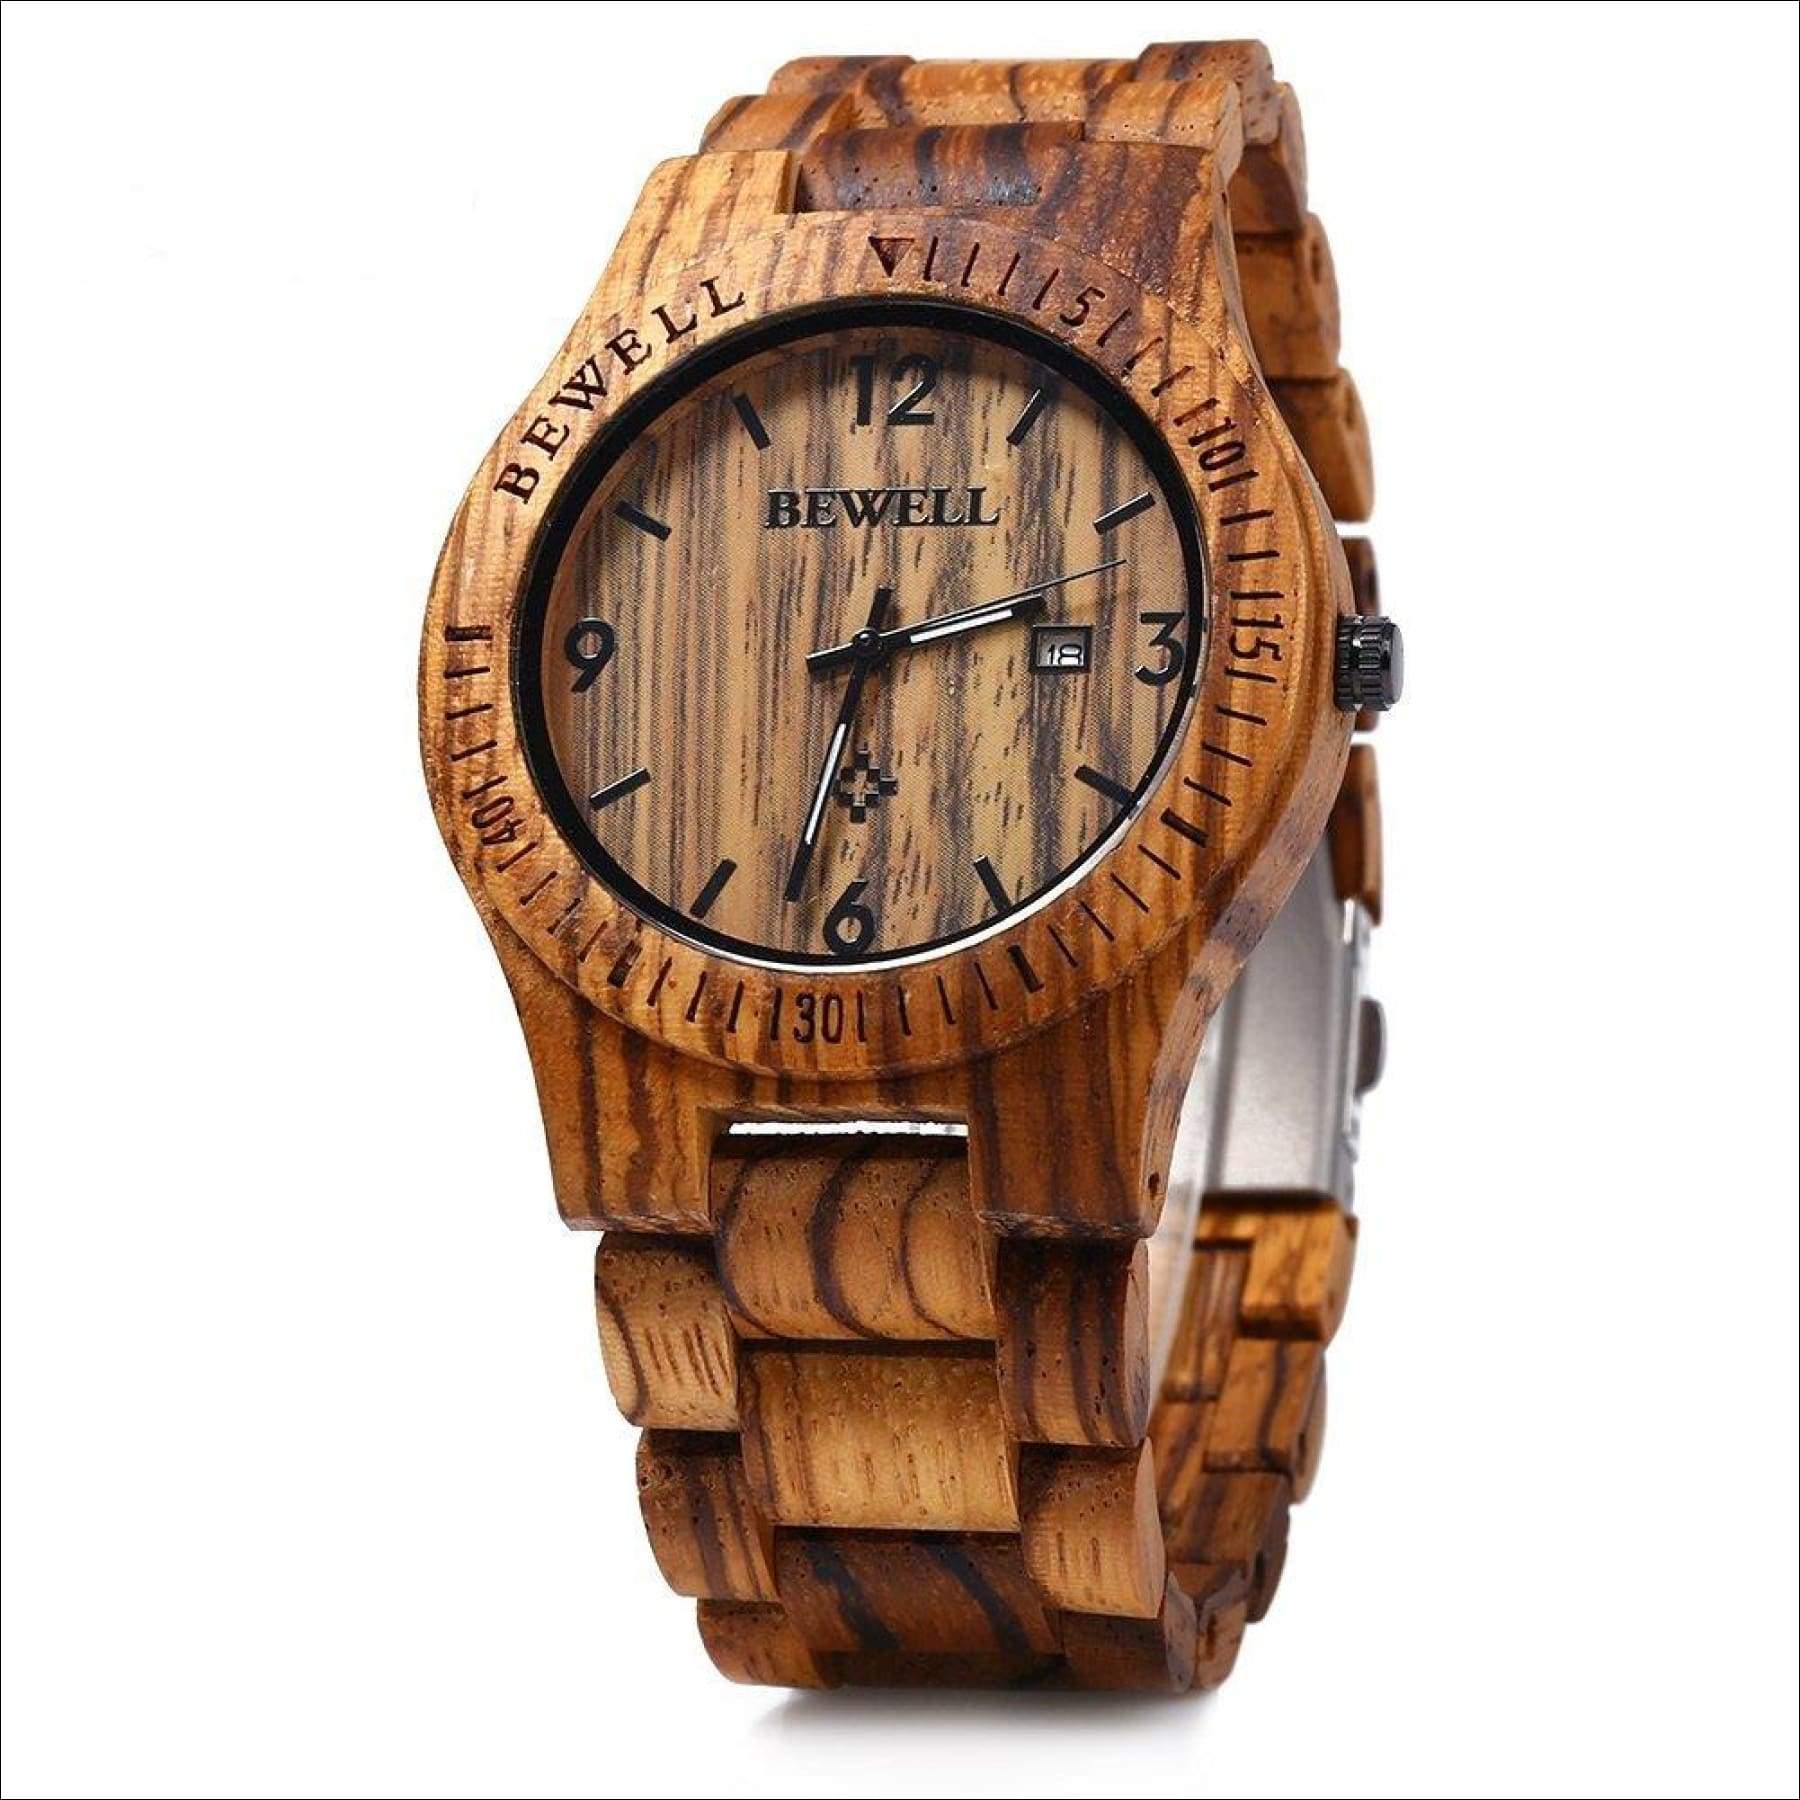 Lightweight　Wood　Quartz　Mens　Handmade　Analog　W086B　Watch　Wrist　Bewell　Brown　Wooden　Watch